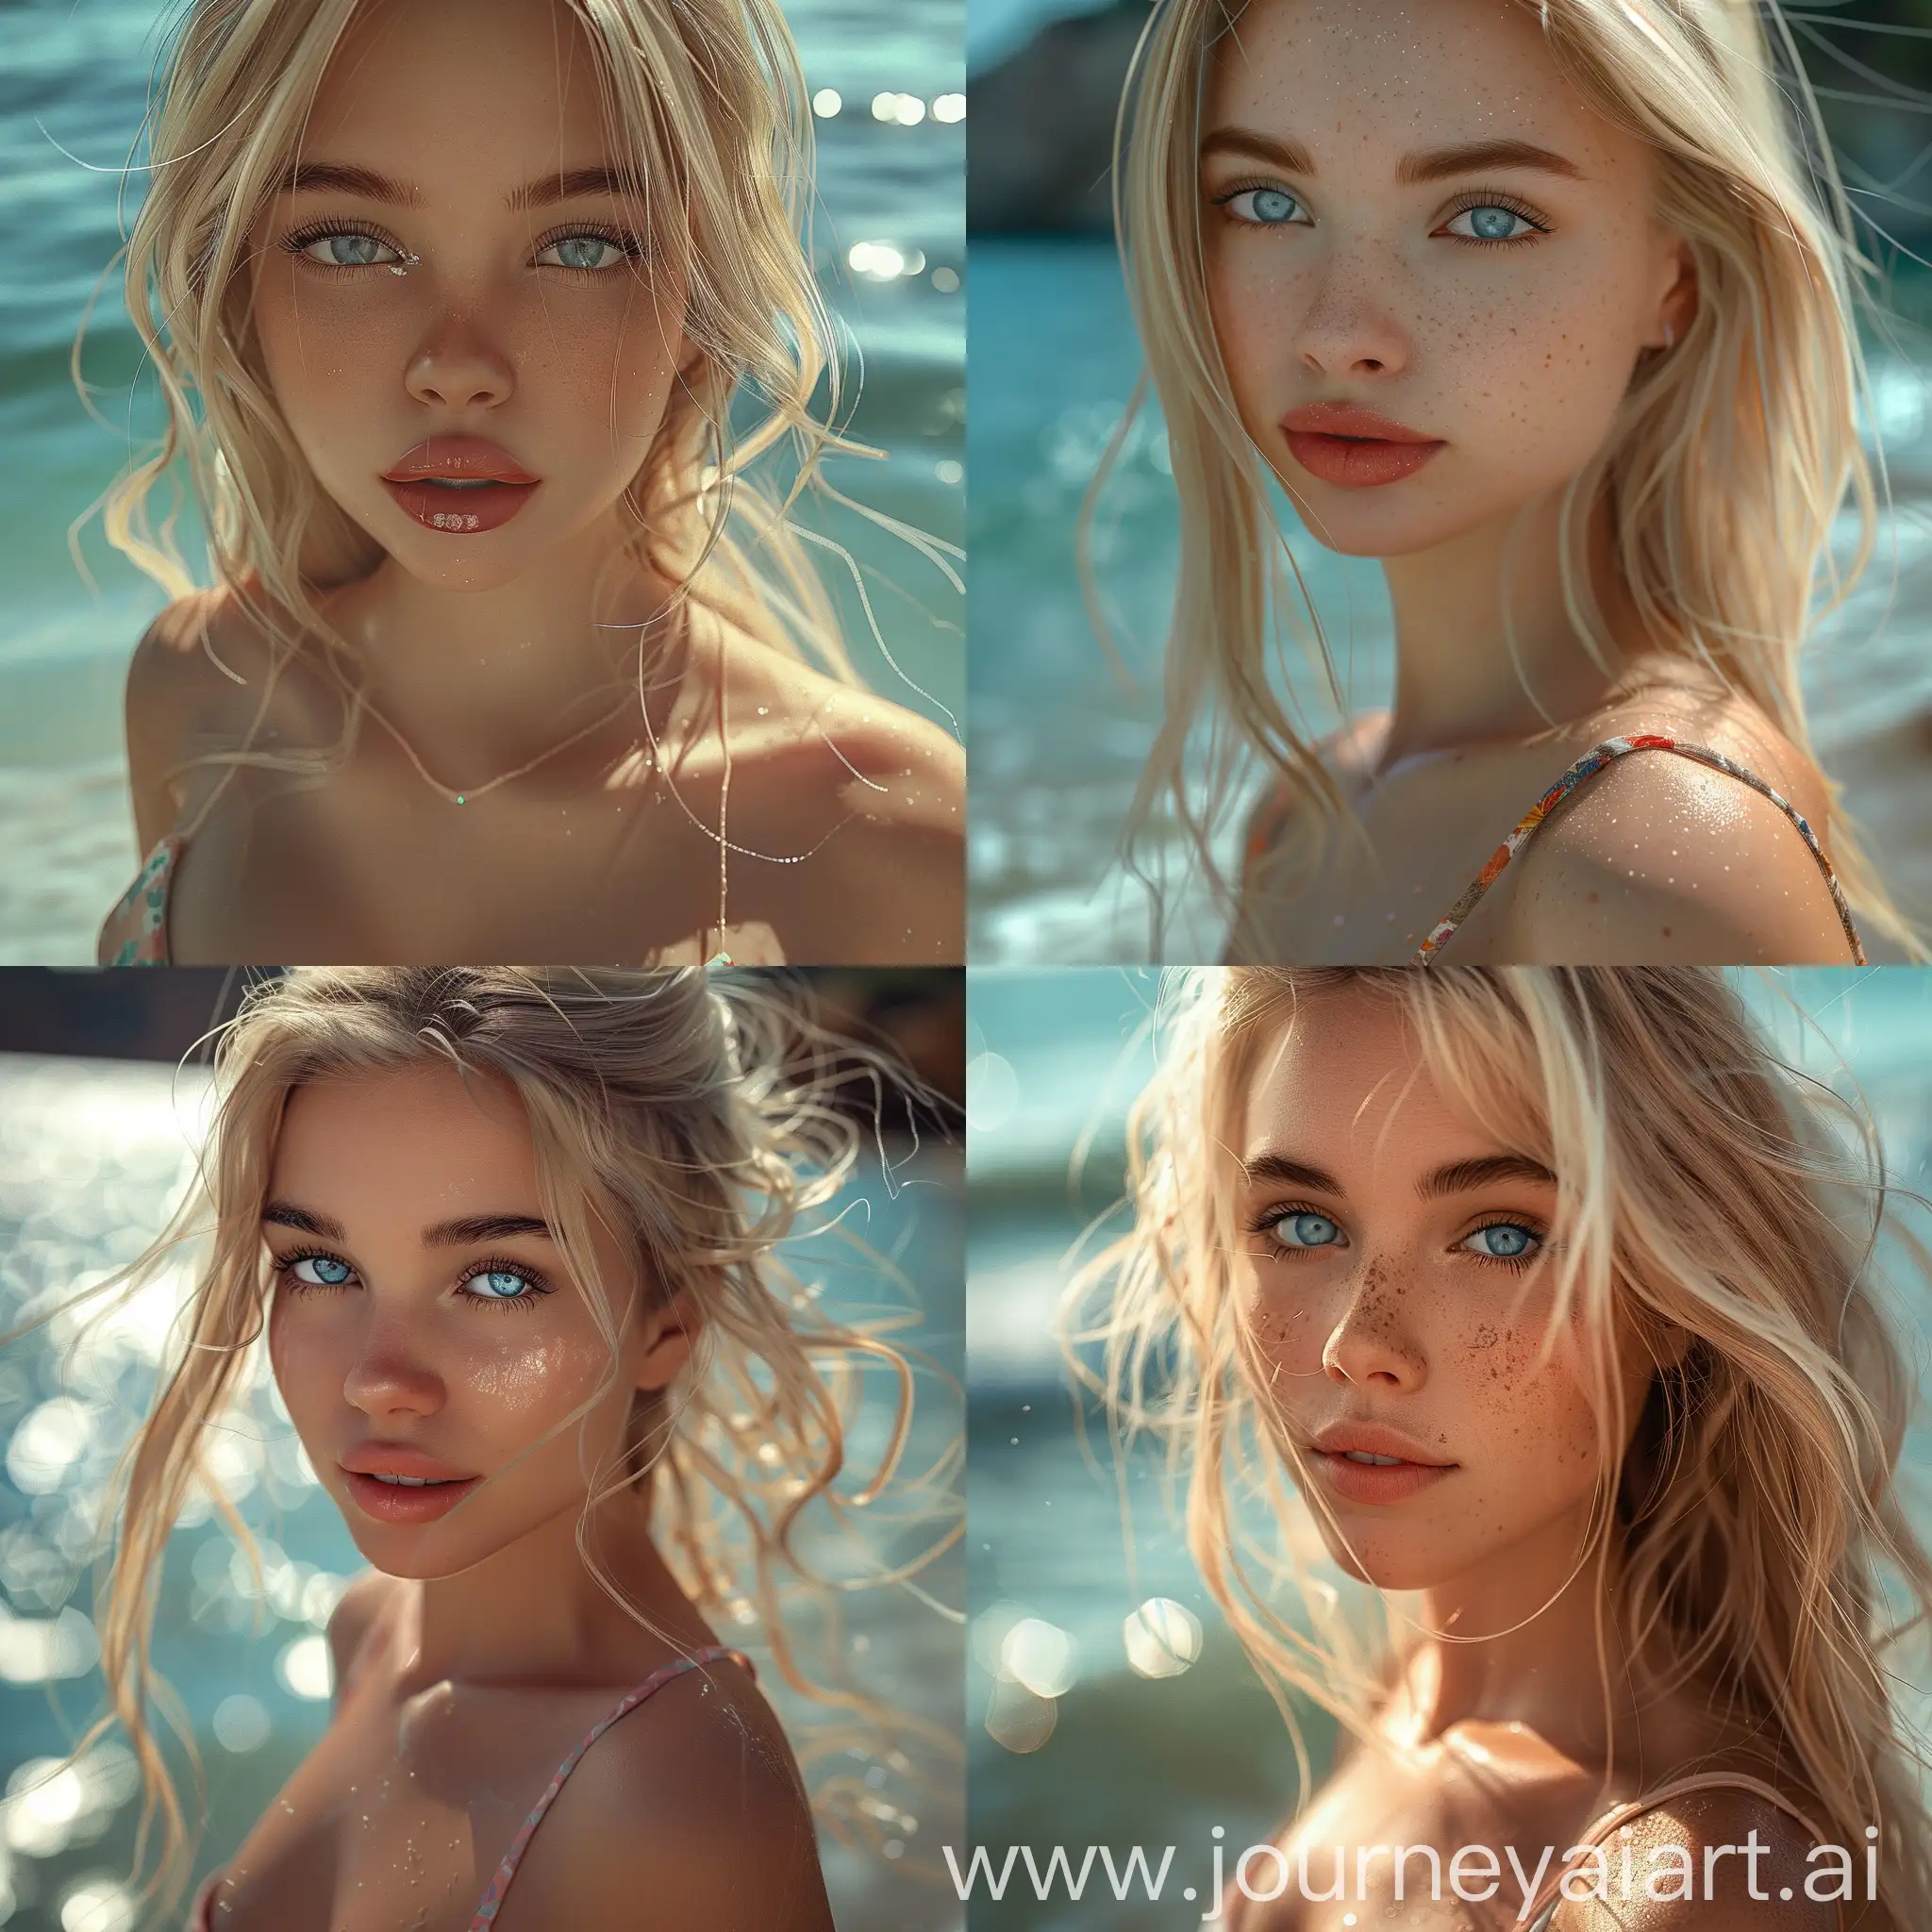 Красивая и стройная девушка 20 лет, блондинка с красивыми голубыми глазами, и красивым макияжем, в купальнике на море, ультра реалистичное и детализированное фото 